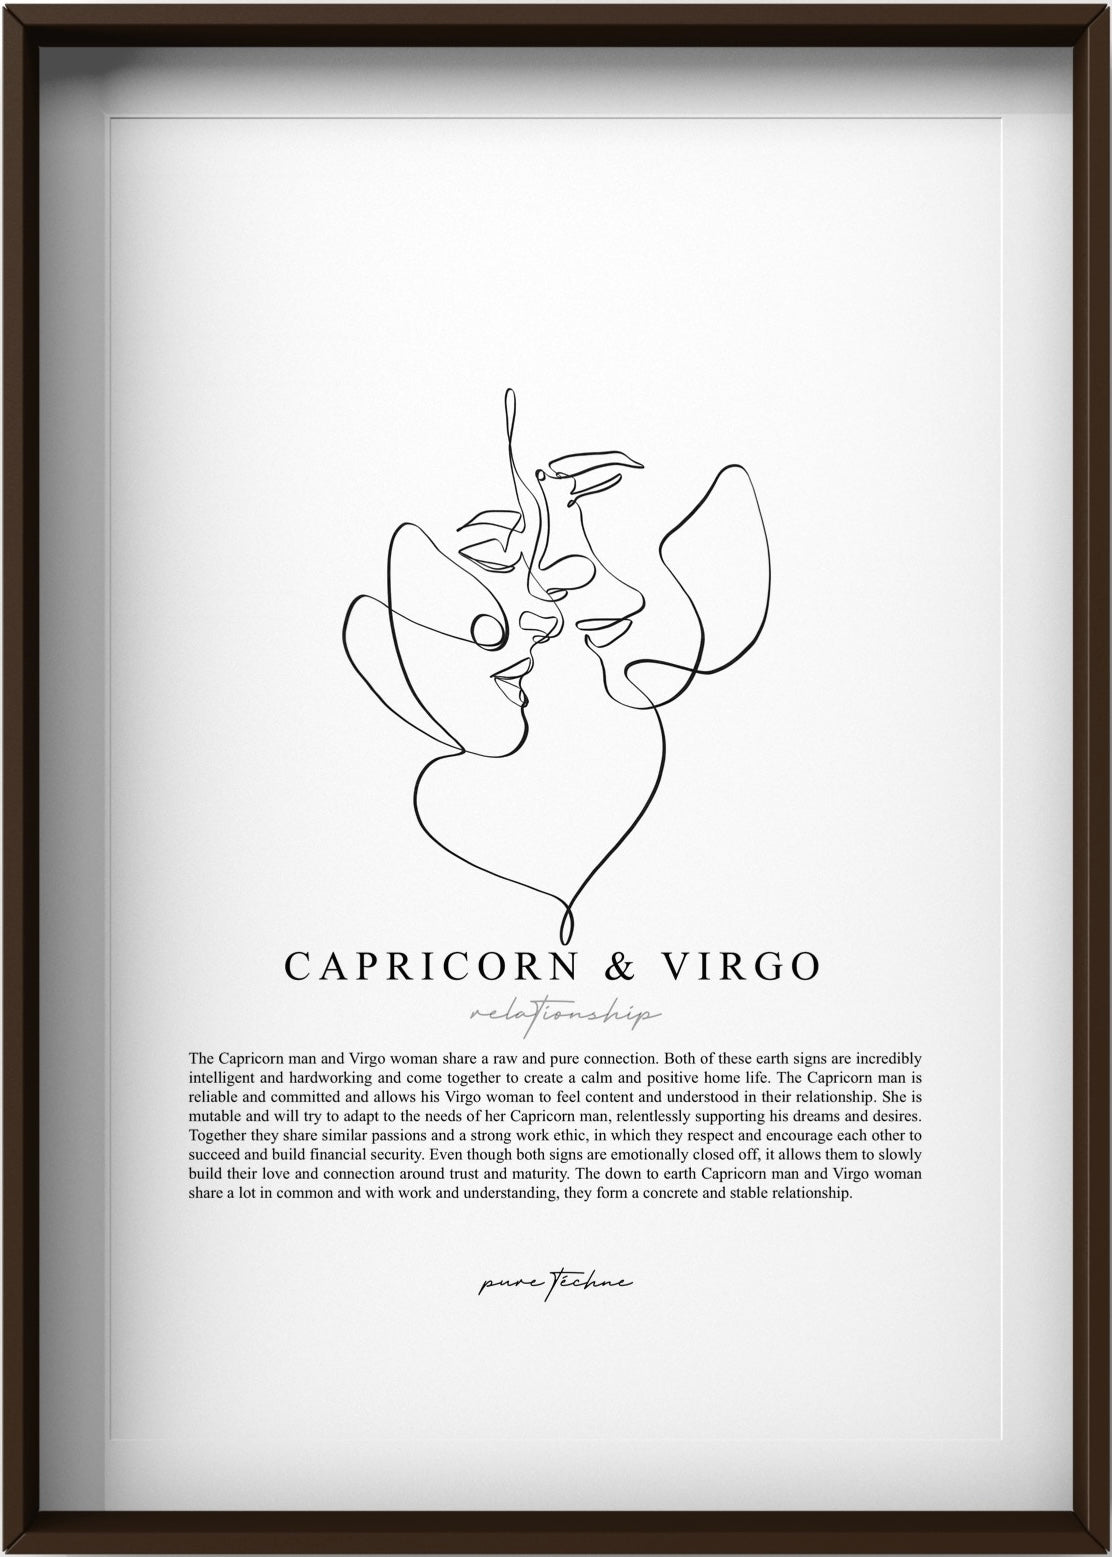 Capricorn Man & Virgo Woman